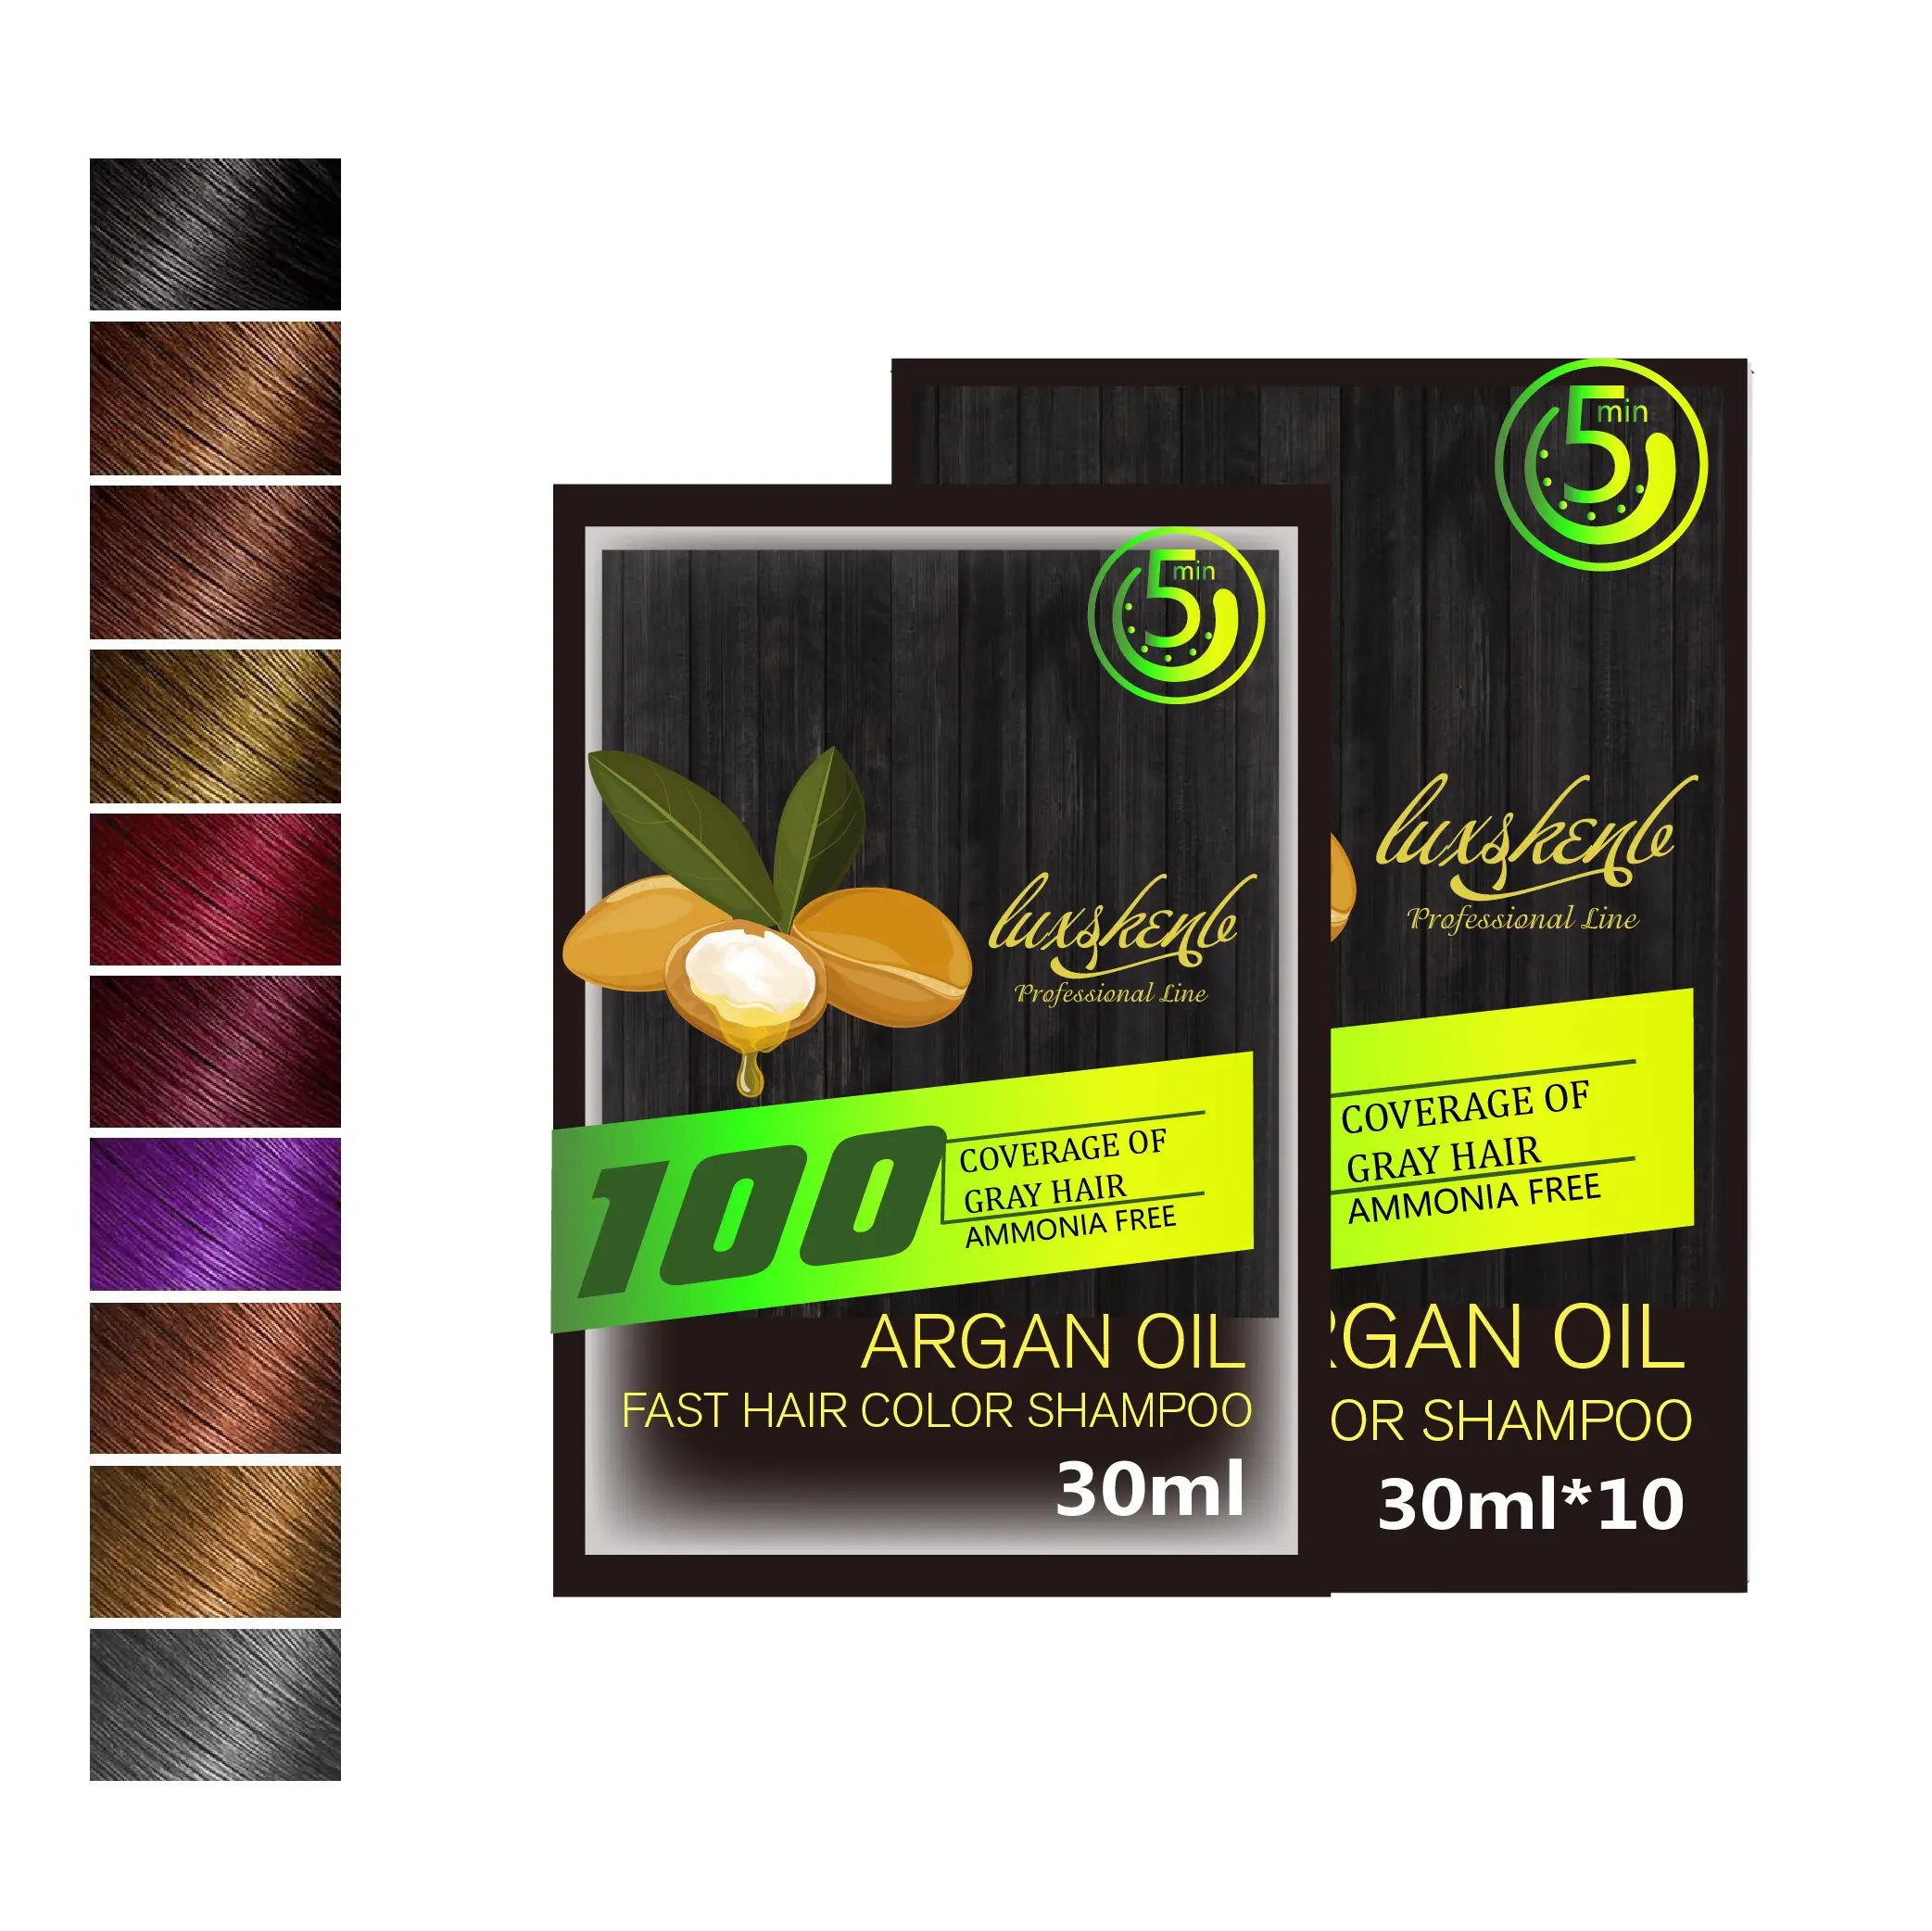 Espuma de aceite de argán de plantas a base de hierbas naturales, colores de tinte para el cabello, materiales dobles no alérgicos, bolsa 2 en 1, tinte para el cabello, champú, bolsita